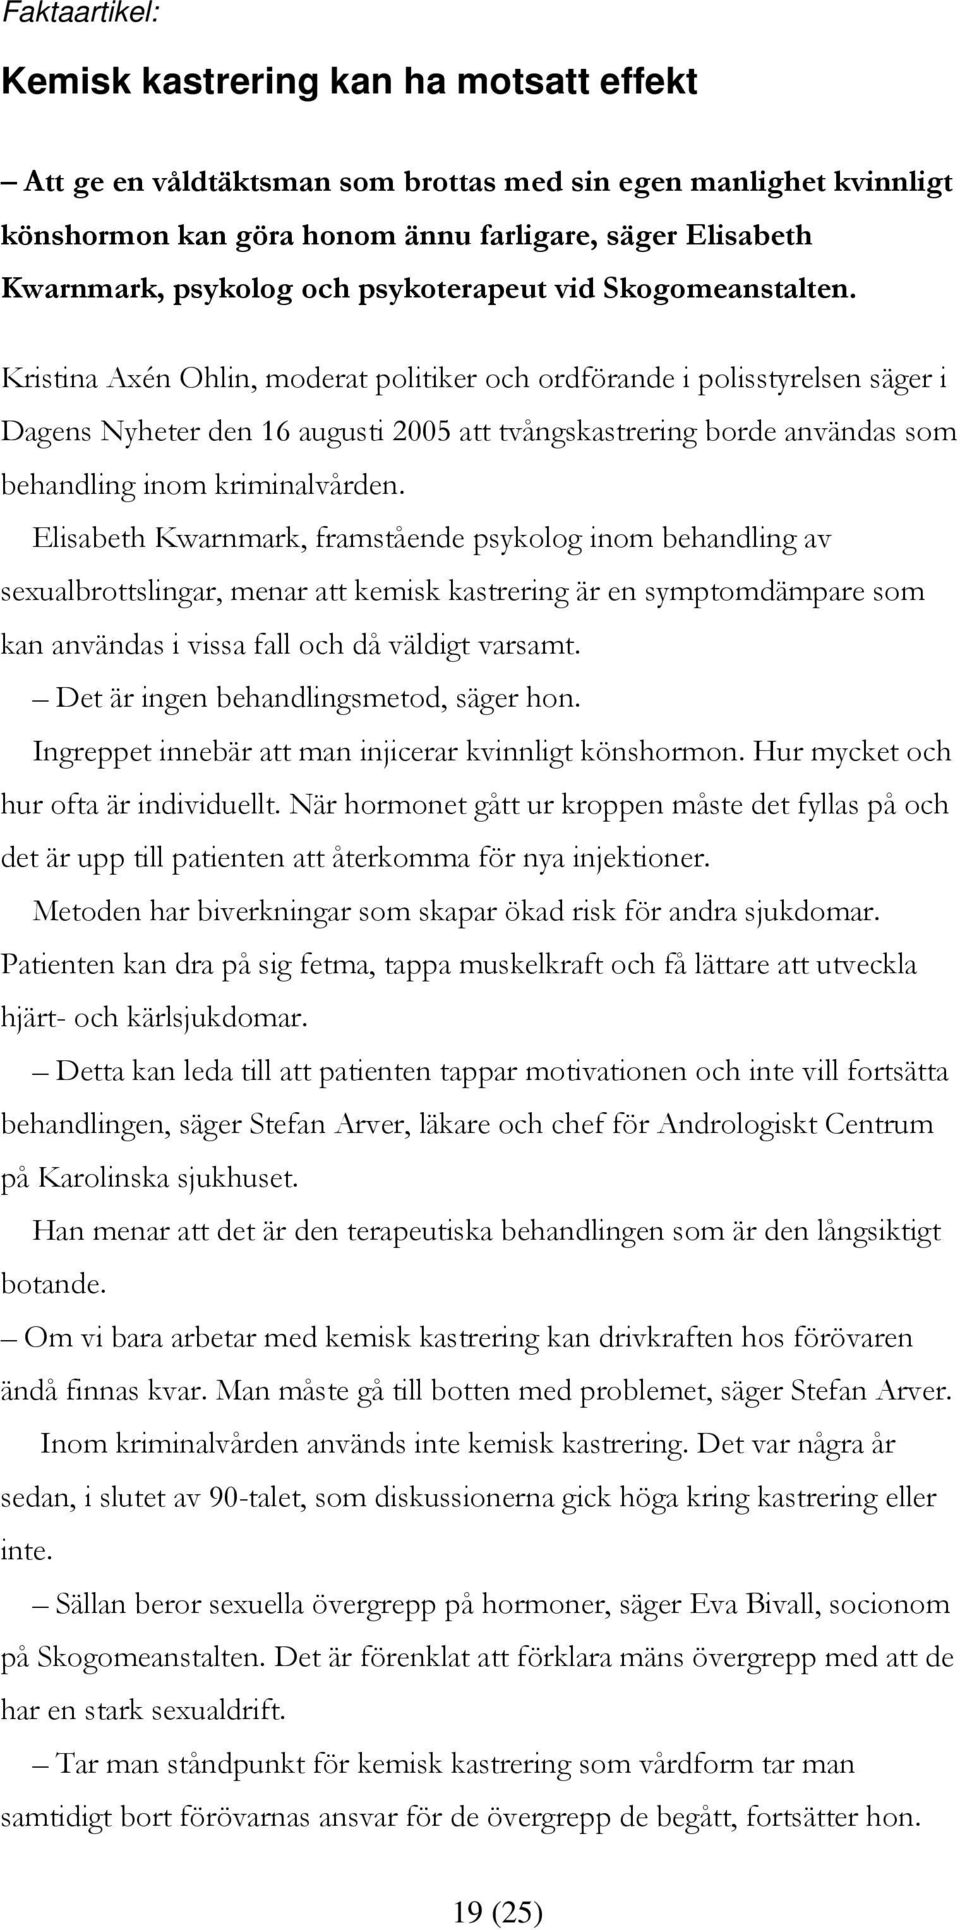 Kristina Axén Ohlin, moderat politiker och ordförande i polisstyrelsen säger i Dagens Nyheter den 16 augusti 2005 att tvångskastrering borde användas som behandling inom kriminalvården.